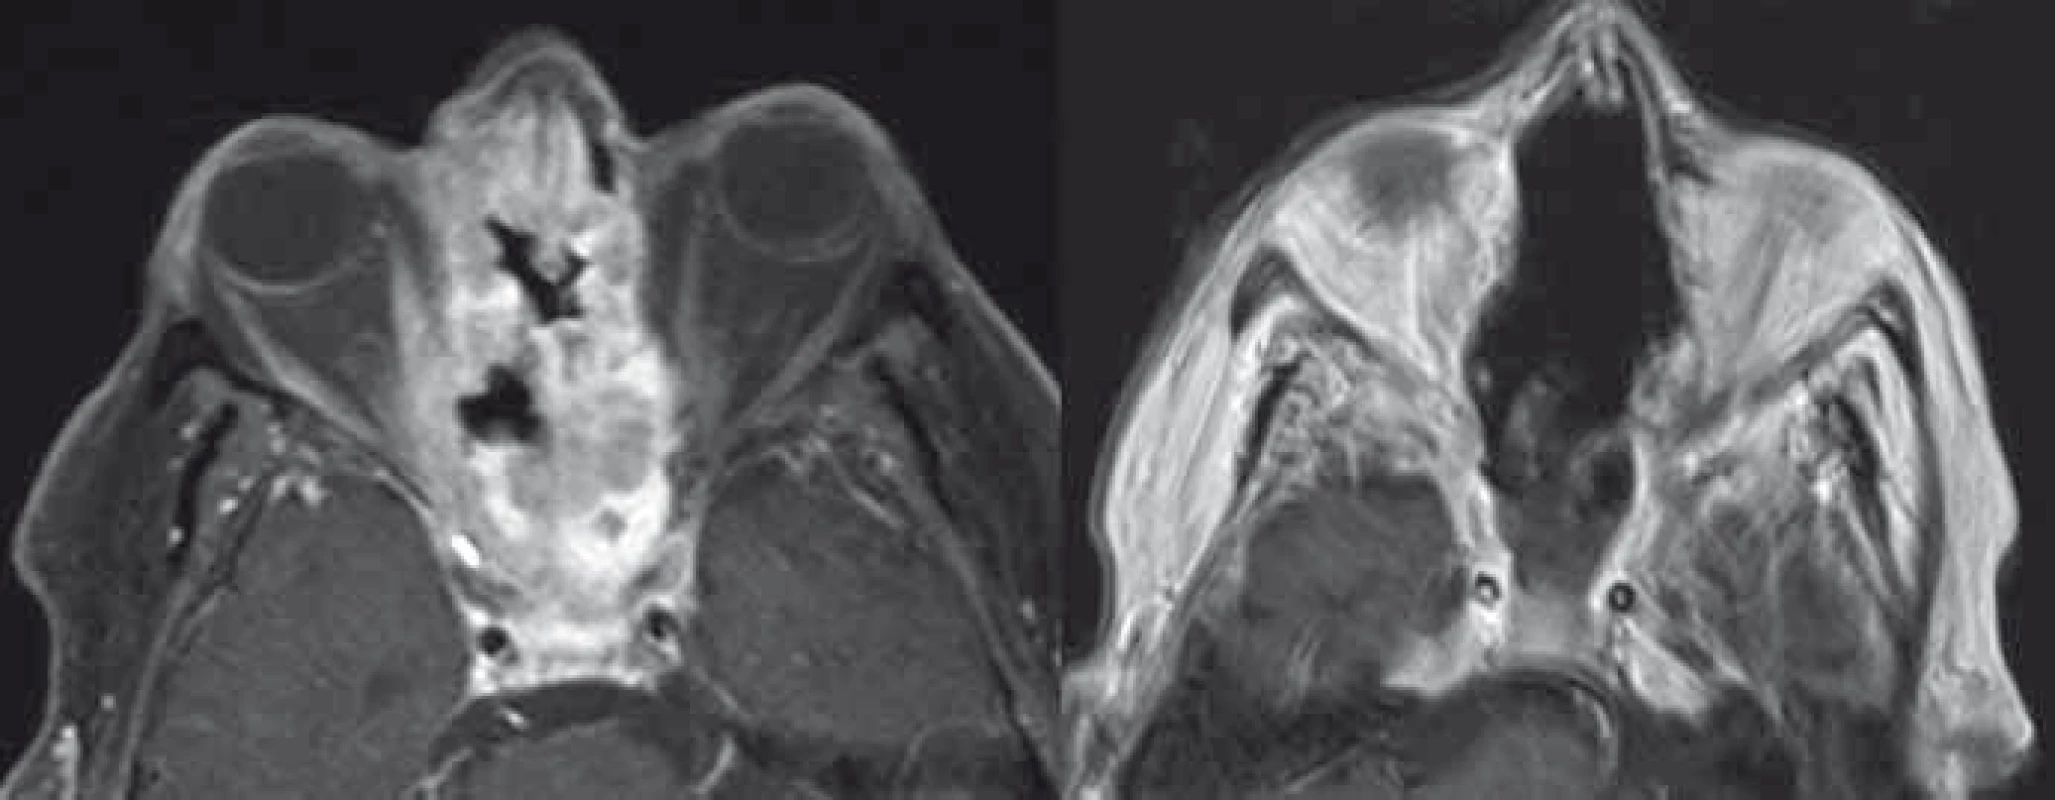 Adenokarcinom etmoidů a dutiny nosní s invazí do mediálních stěn očnic a baze přední jámy lební před (vlevo, T1 vážená sekvence MR s potlačením tuku a podáním kontrastní látky) a po radikální resekci (vpravo, T1 vážená MR sekvence s podáním kontrastní látky).